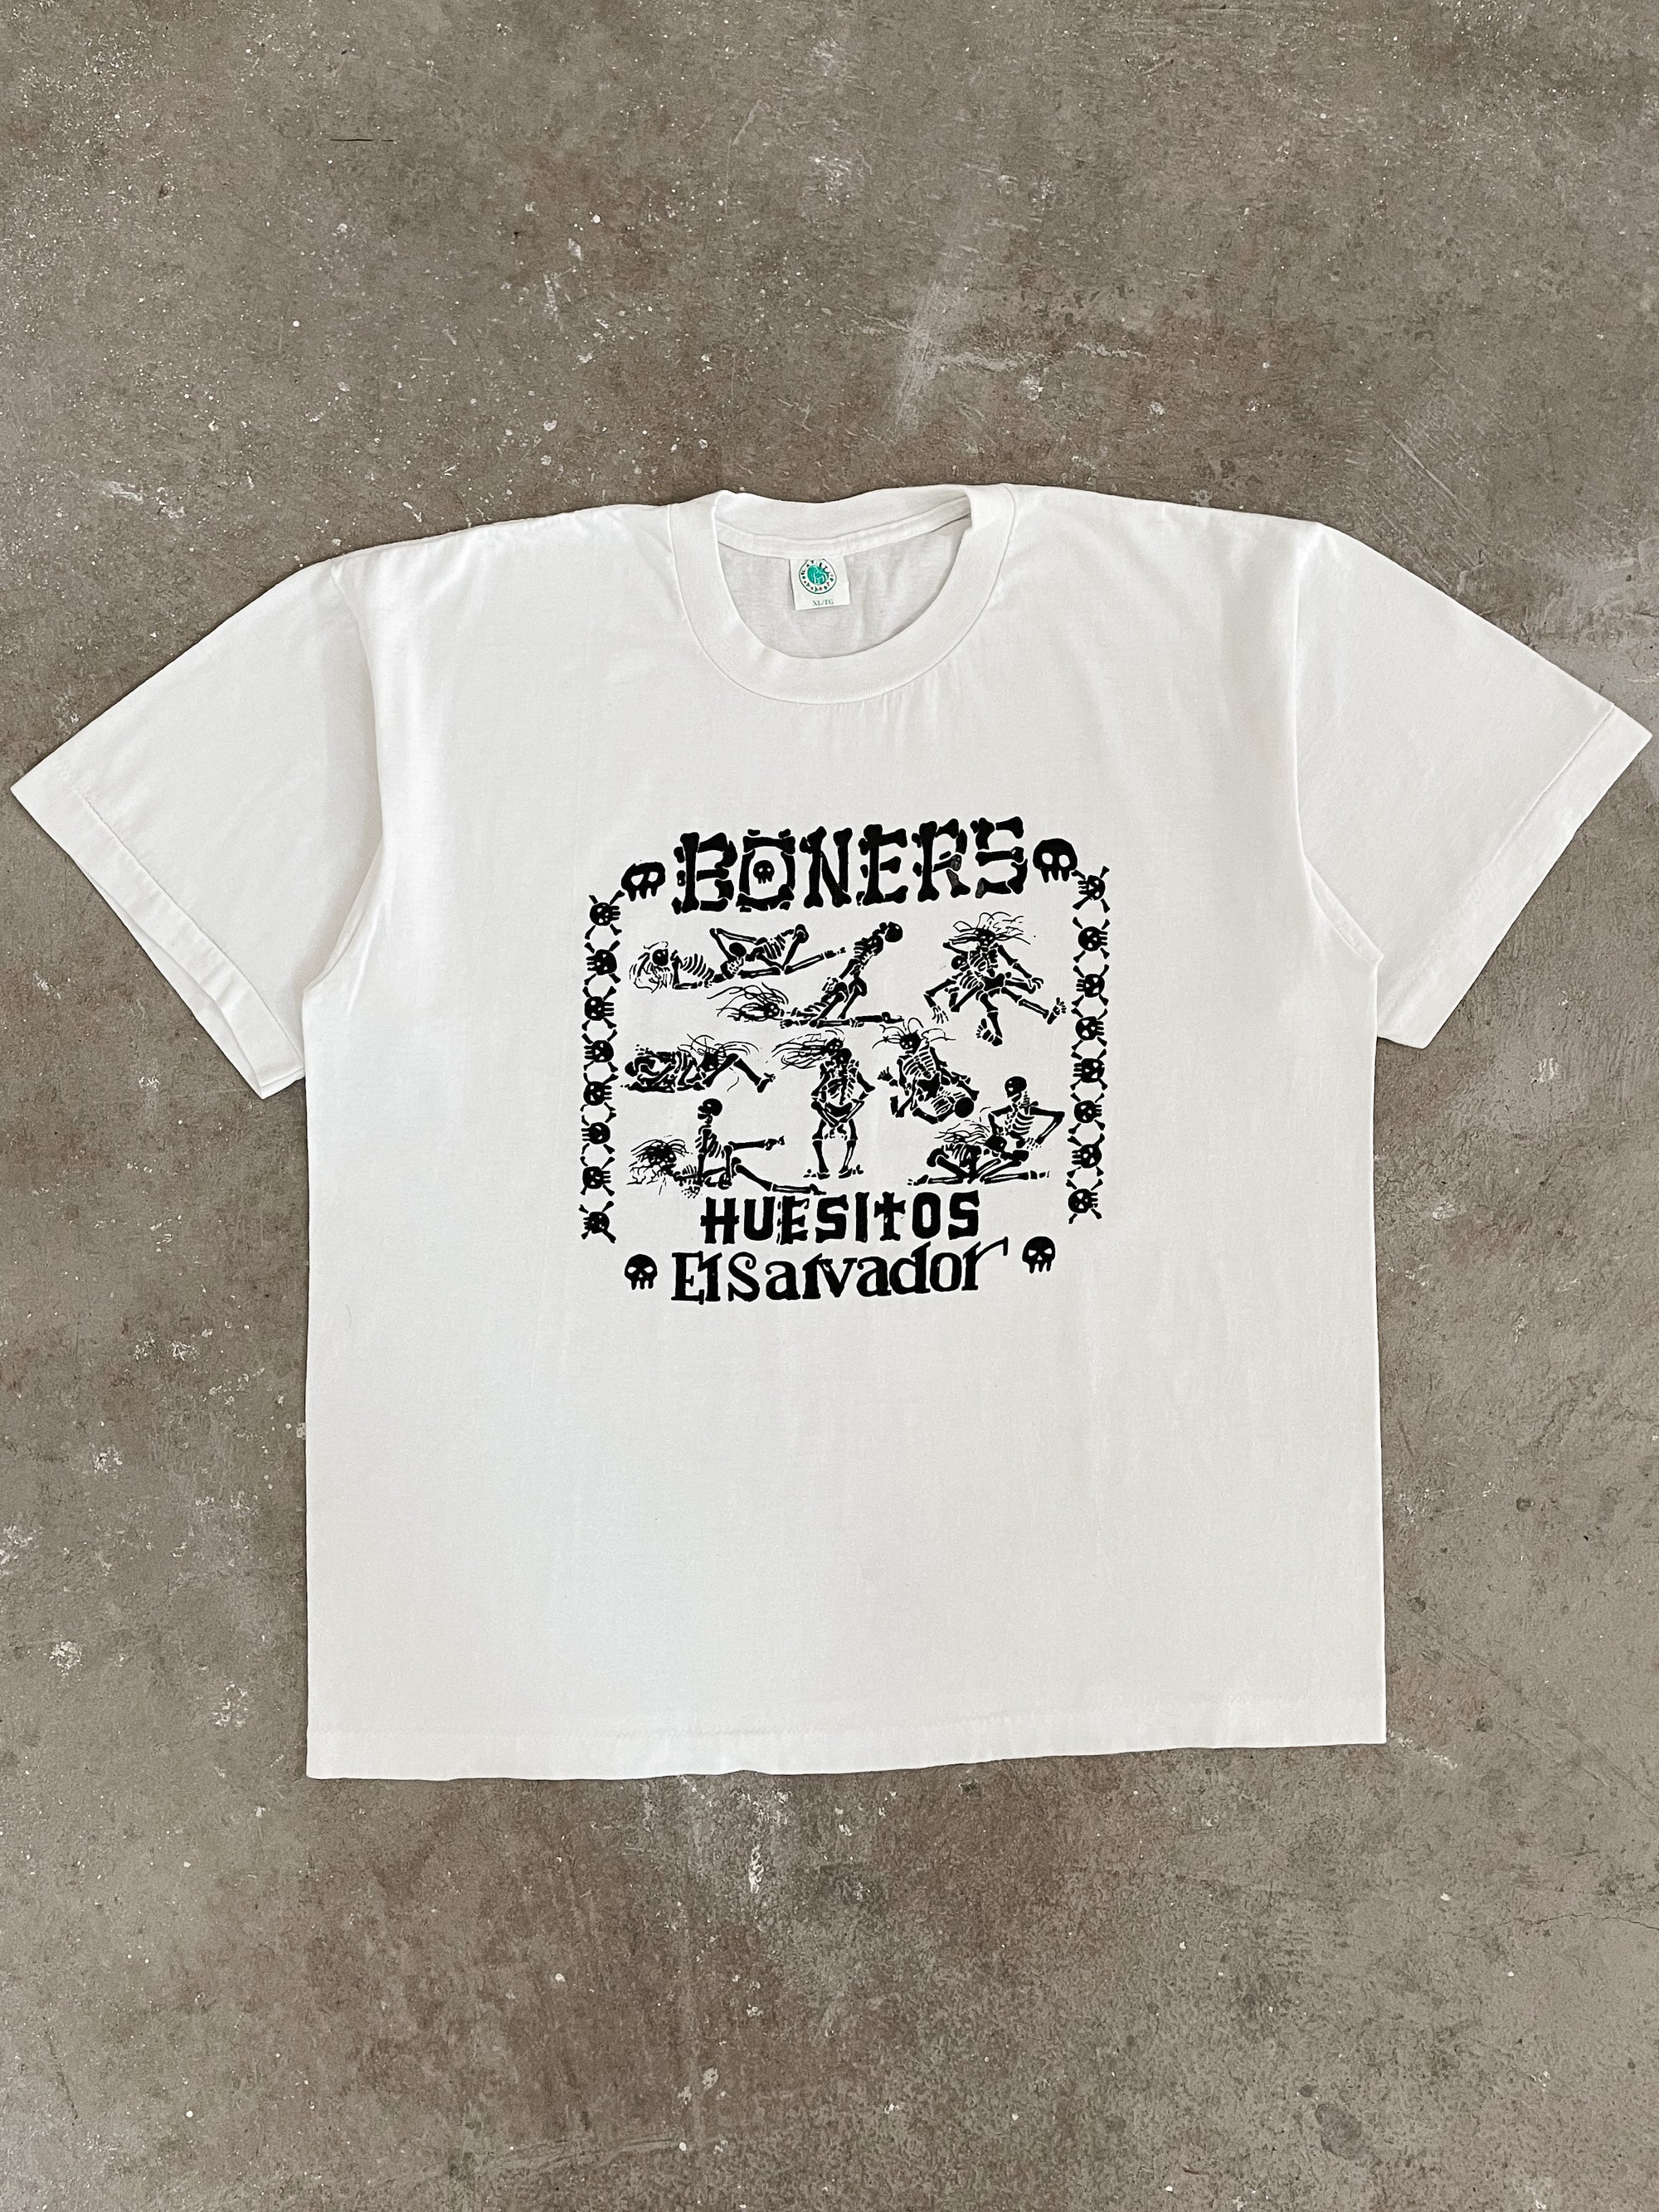 1990s “Boners El Salvador” Single Stitched Tee (XL)